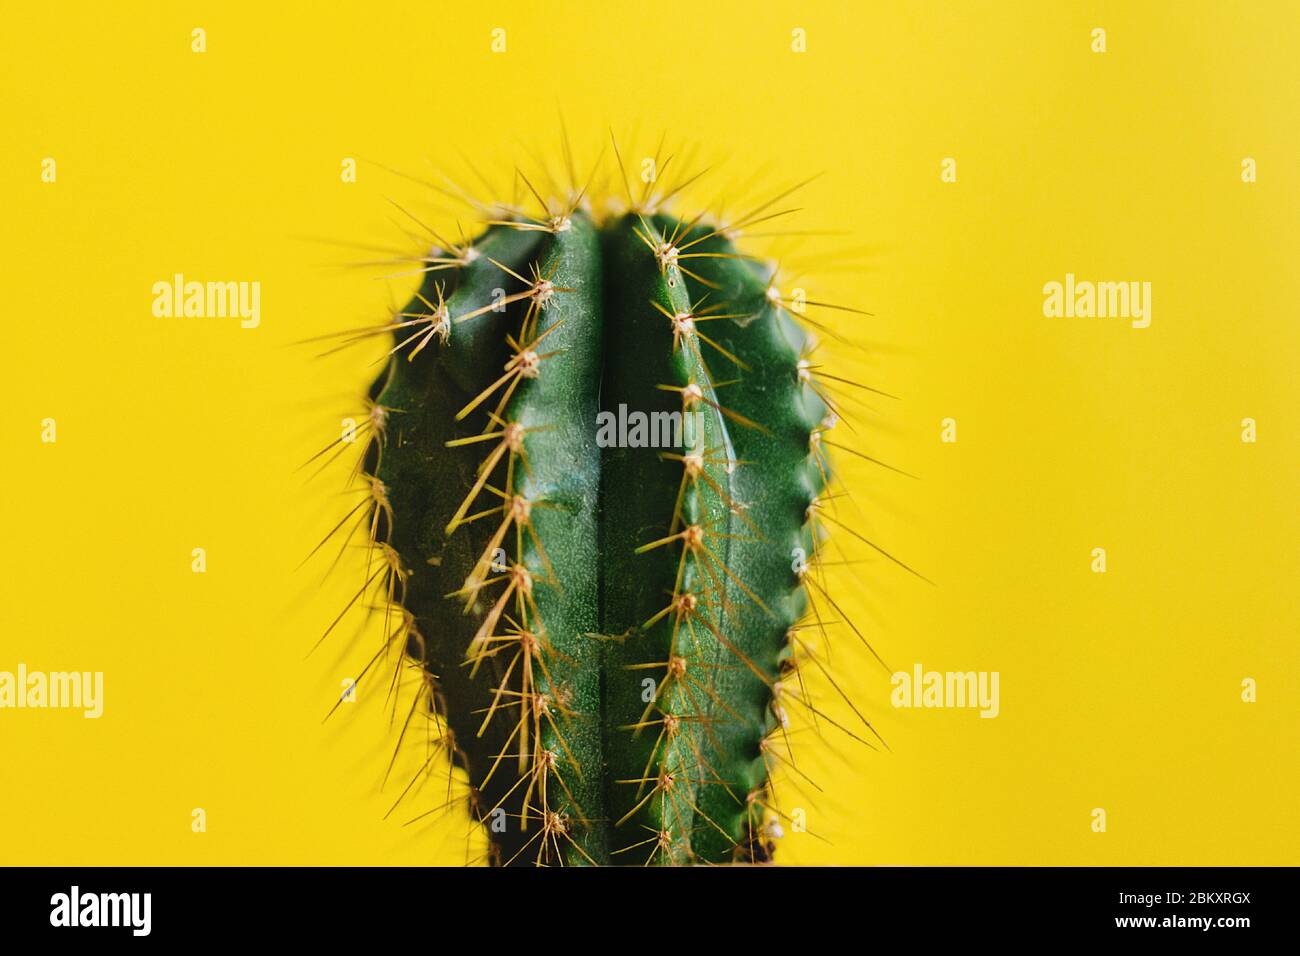 Cactus messicano nel vaso, pianta in Messico cultura messicana Foto Stock